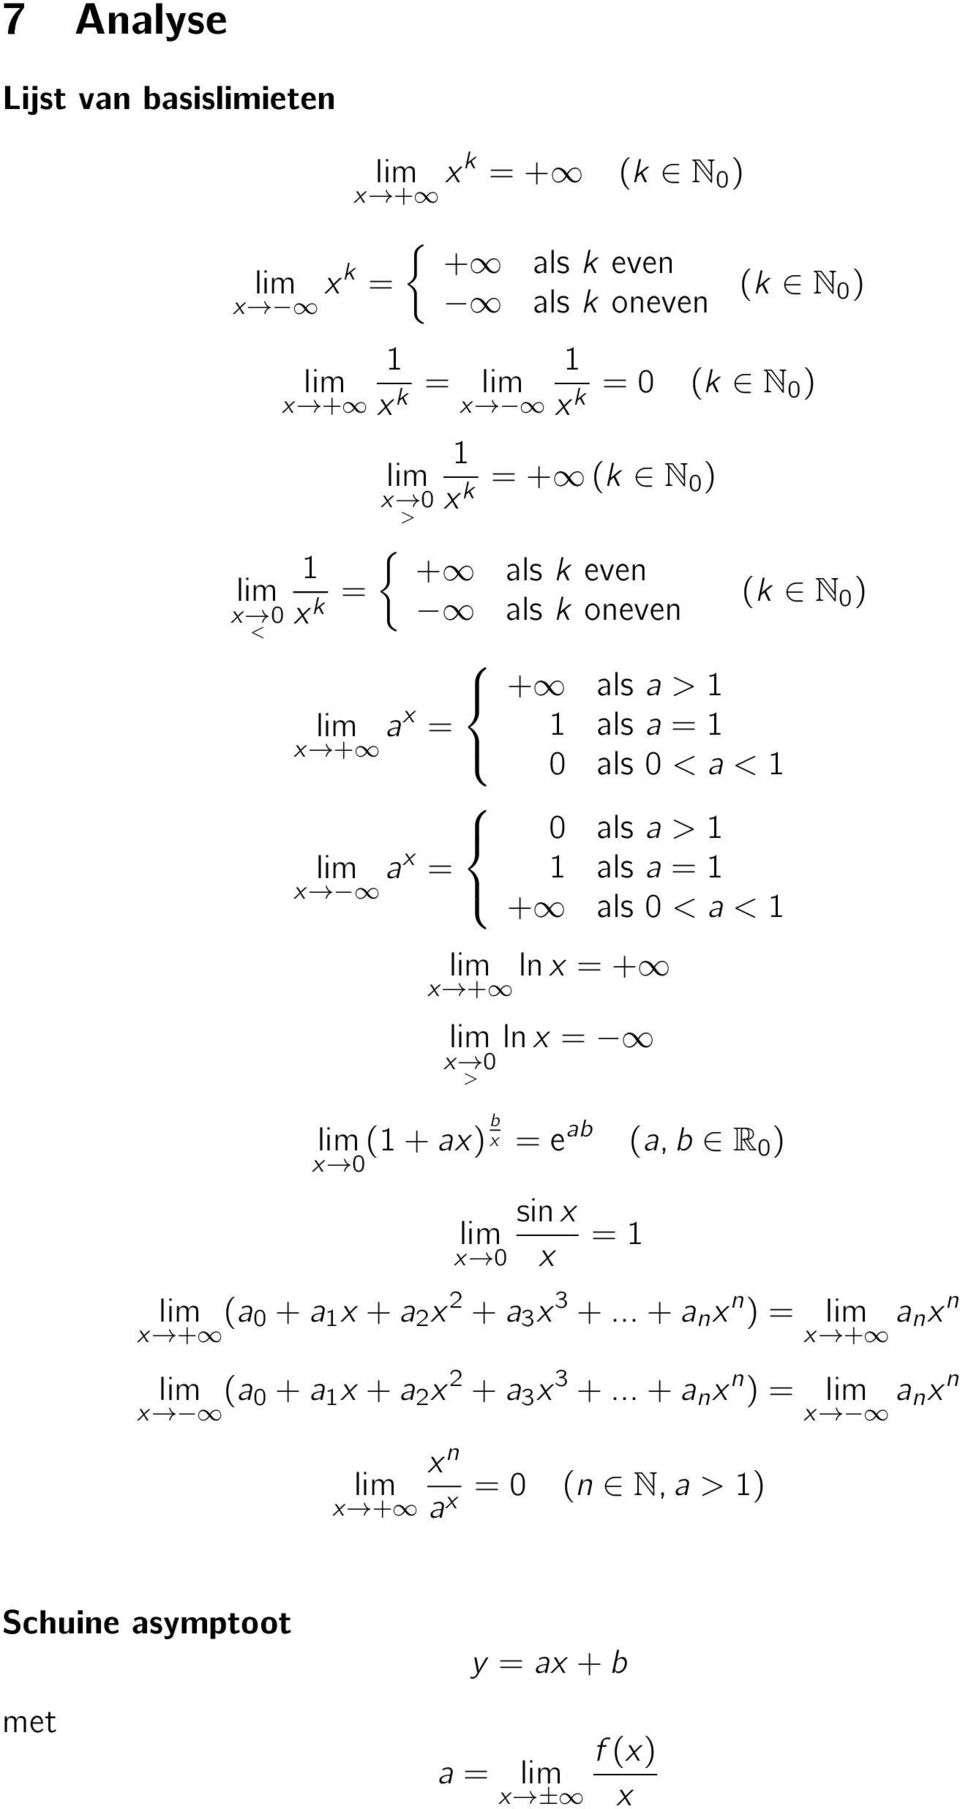 als 0 < a < ln x = + x + ln x = x 0 > = e ab sin x x 0 x = (a, b R 0 ) (k N 0 ) (a 0 + a x + a 2 x 2 + a 3 x 3 + + a n x n ) = a nx n x